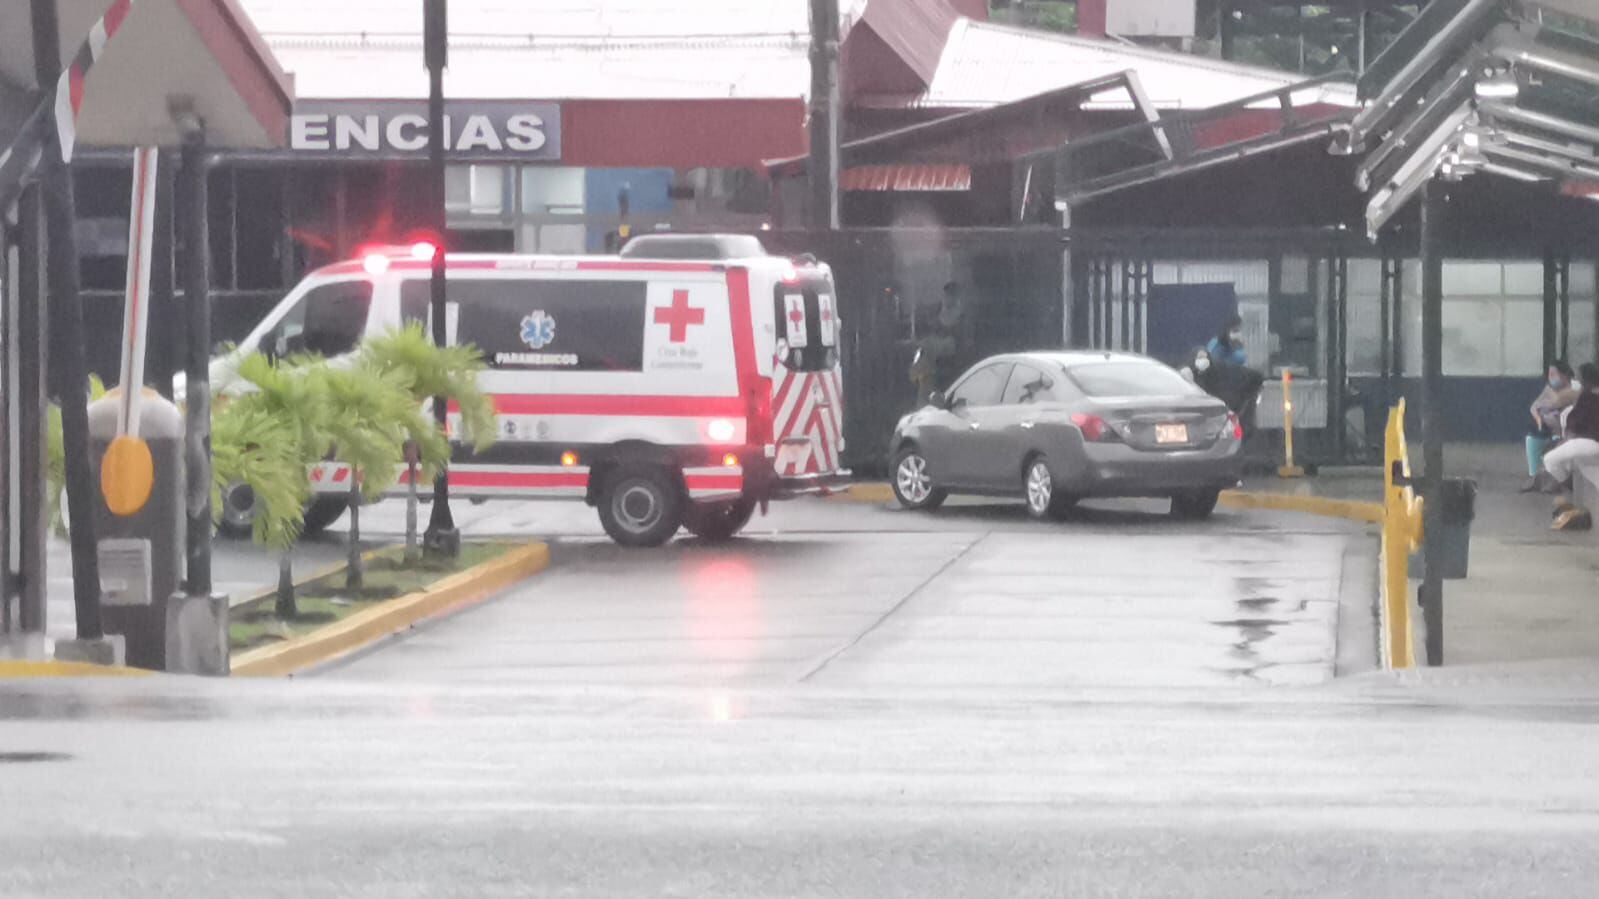 Sobre la persona que se trasladó en condición grave, fue llevada al Hospital Guápiles. Foto: Reiner Montero, corresponsal.